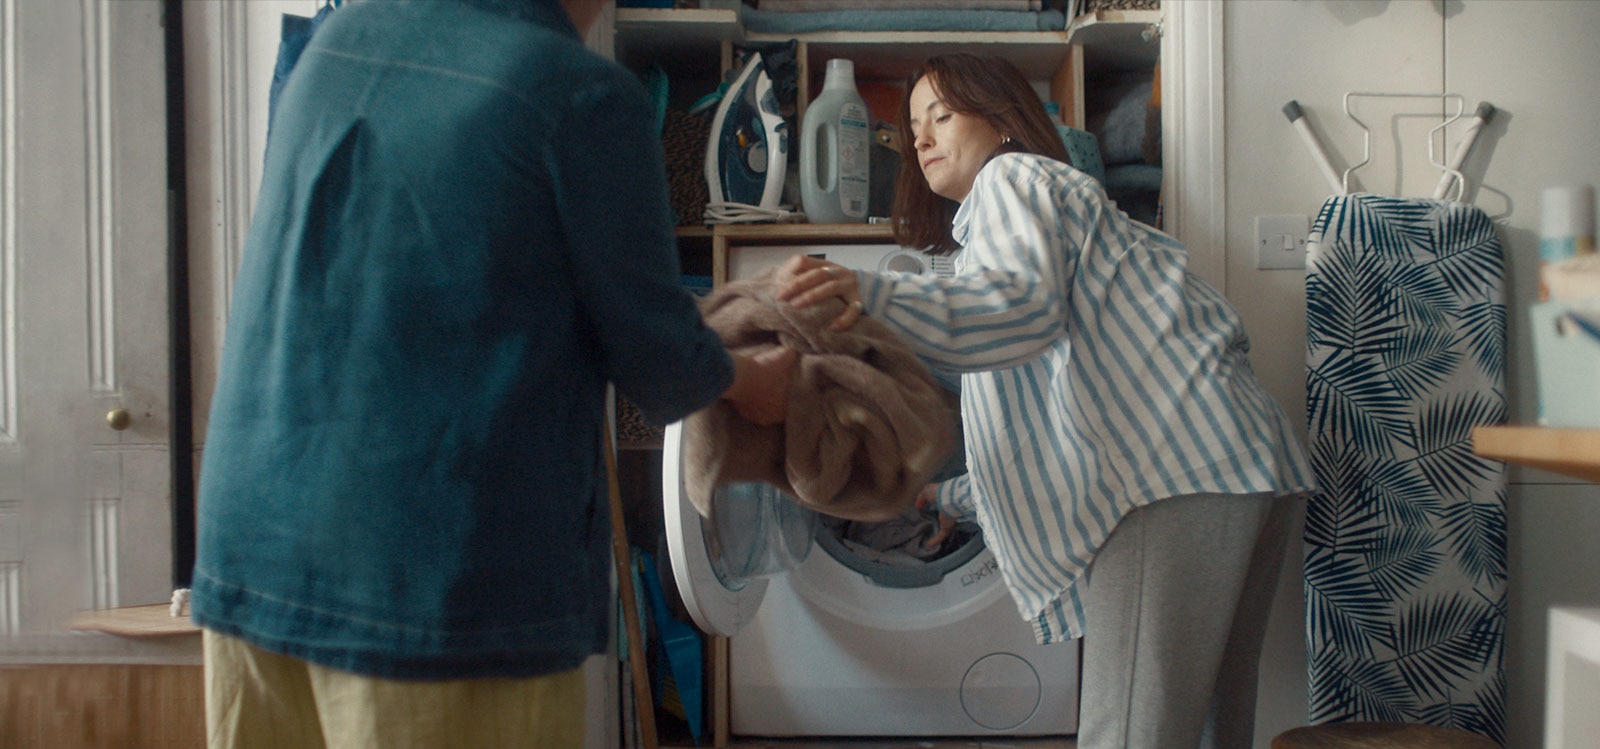 Nainen ottaa pyykkejä pesukoneesta ja ojentaa ne äidilleen.